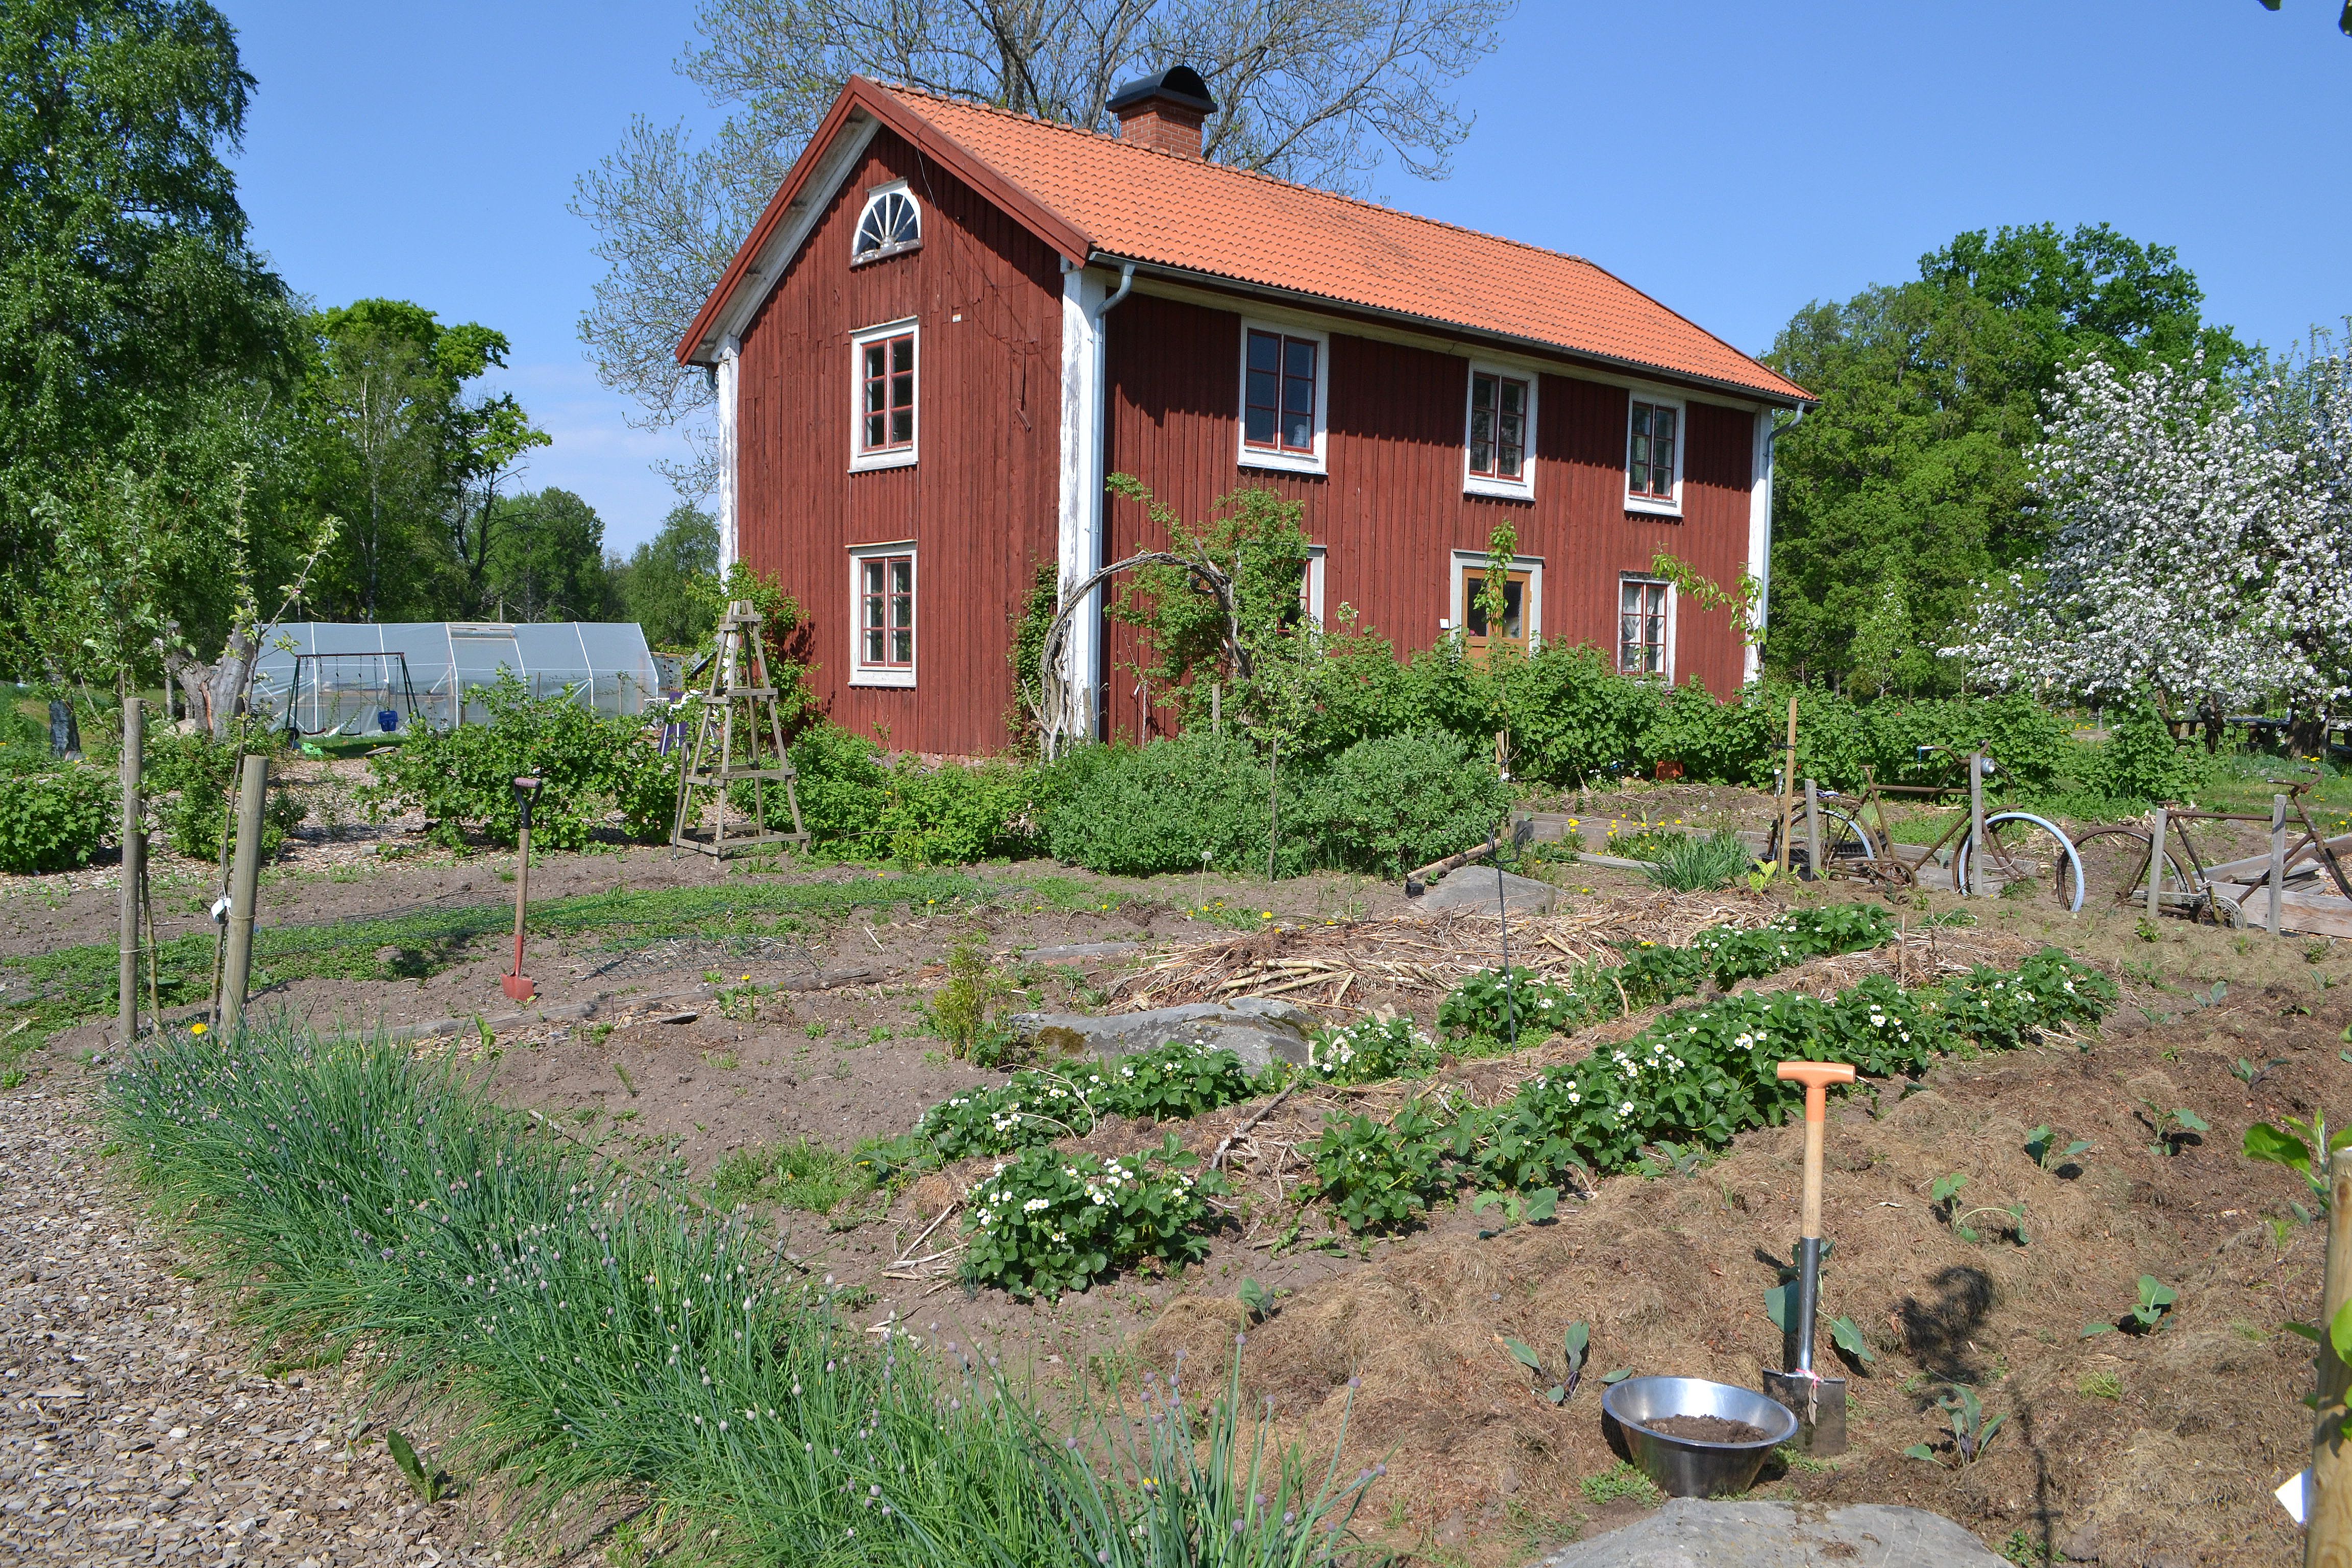 En köksträdgård med låg växtlighet, full sol och stort rött bostadshus i bakgrunden. Soil analysis, the kitchen garden in full bloom. 